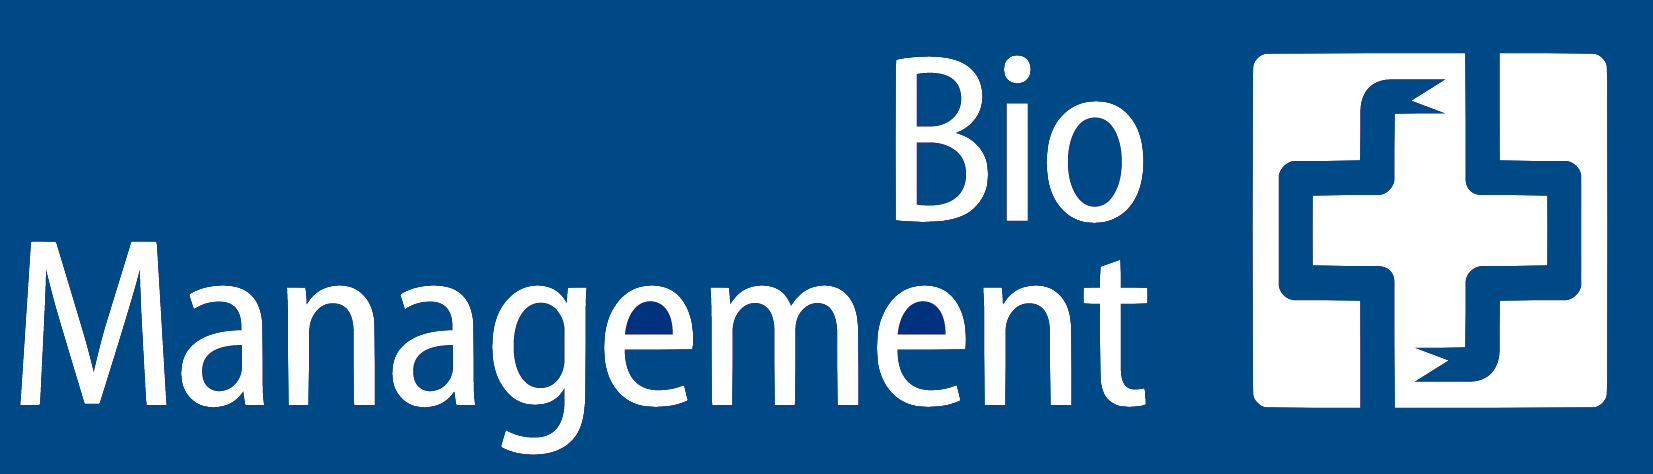 BioManagement